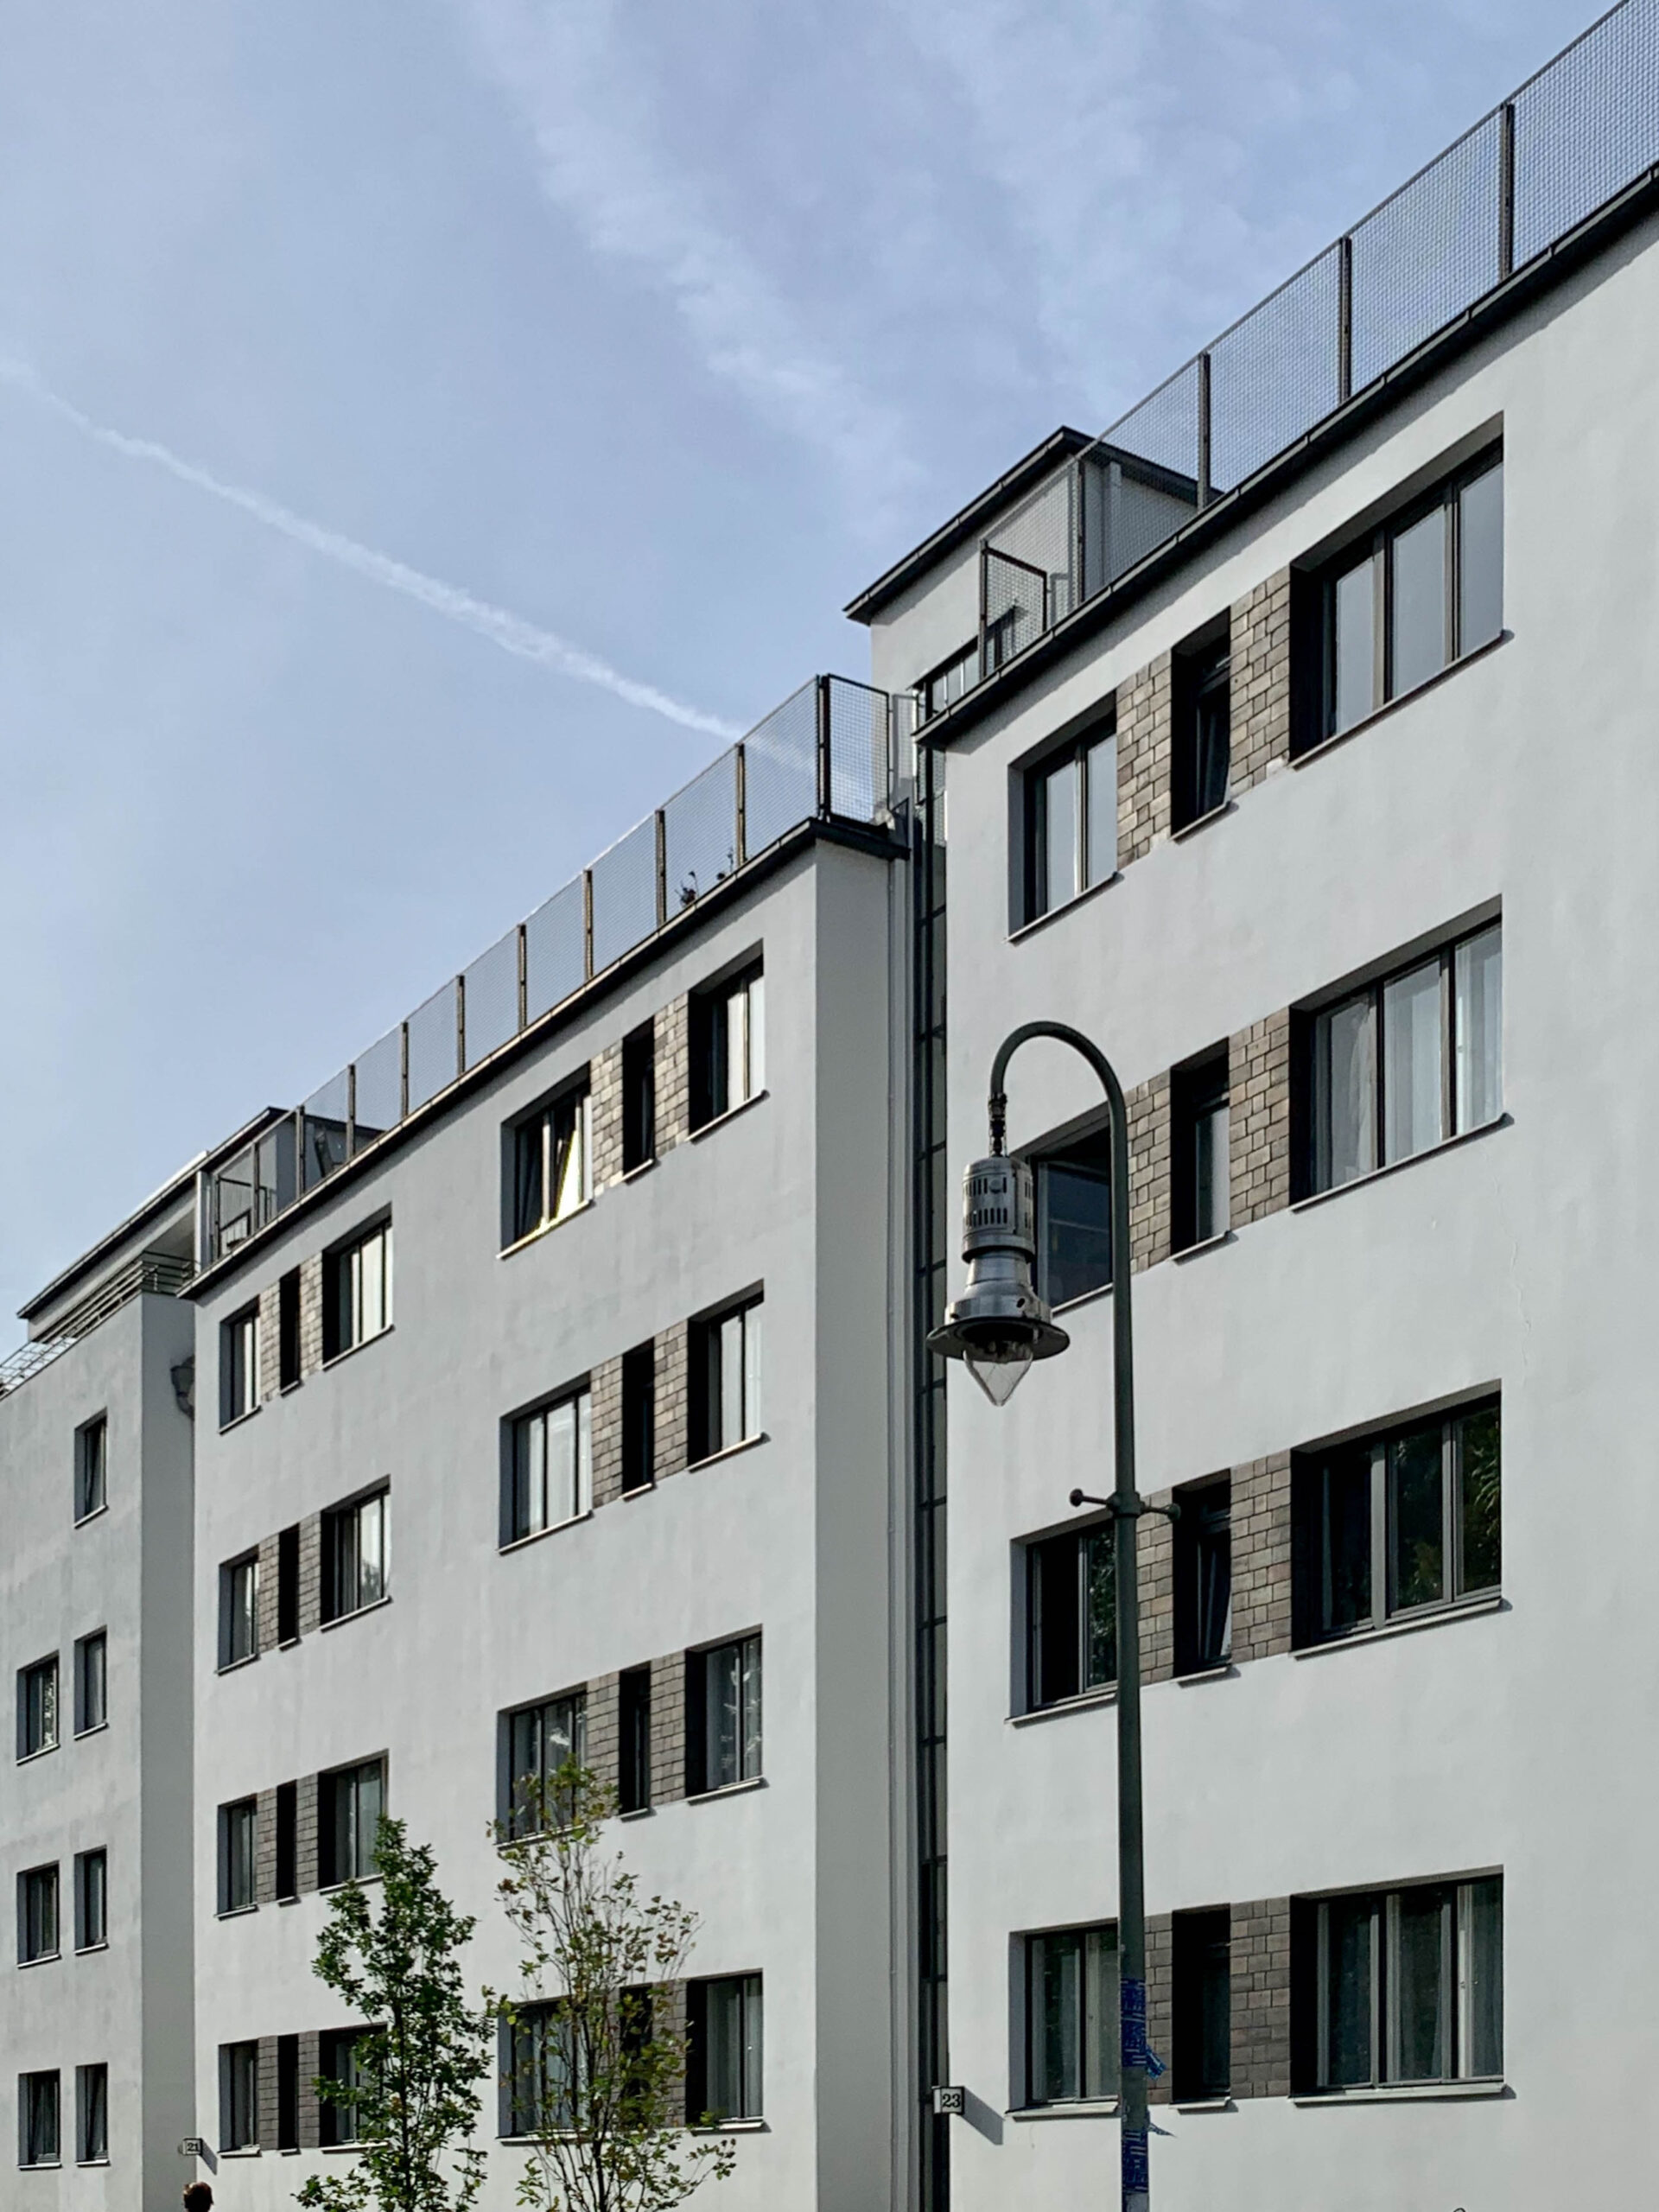 Residential complex, Siemensstadt, 1929-1931. Architect: Walter Gropius. Photo: Daniela Christmann